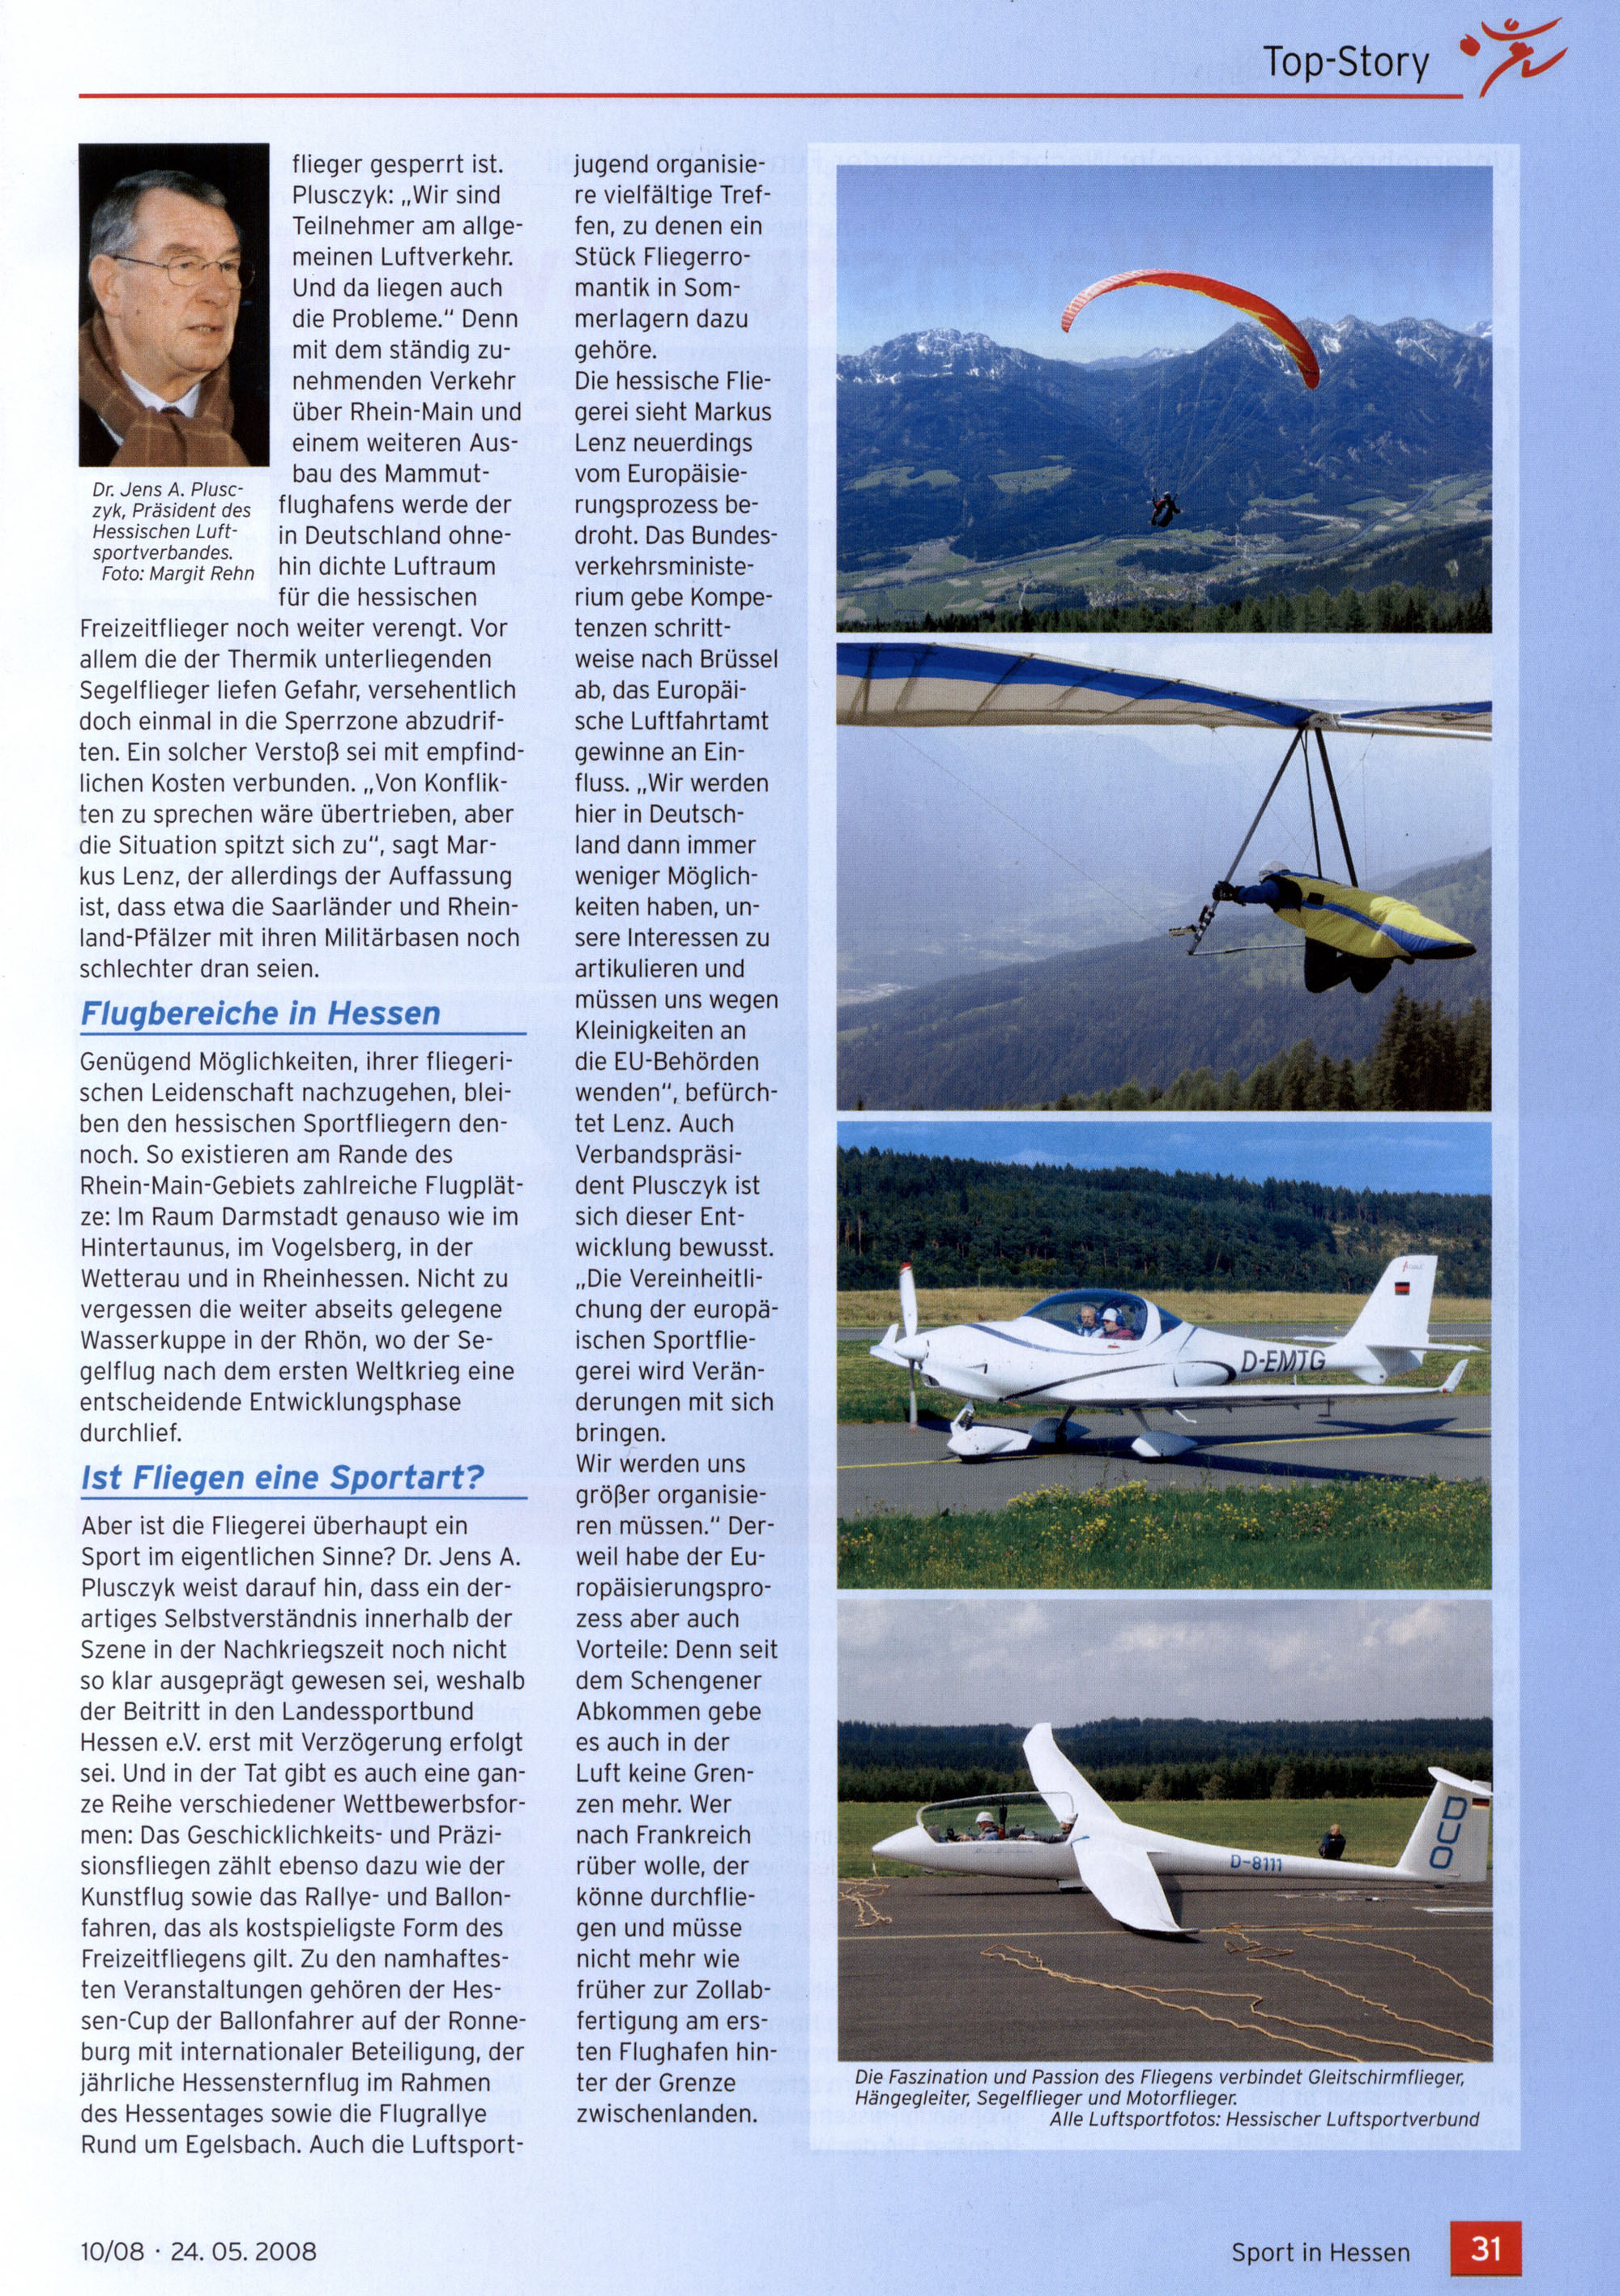 Interview mit Markus Lenz, Pressesprecher des Deutschen Aero Club für den Landesverband Hessen